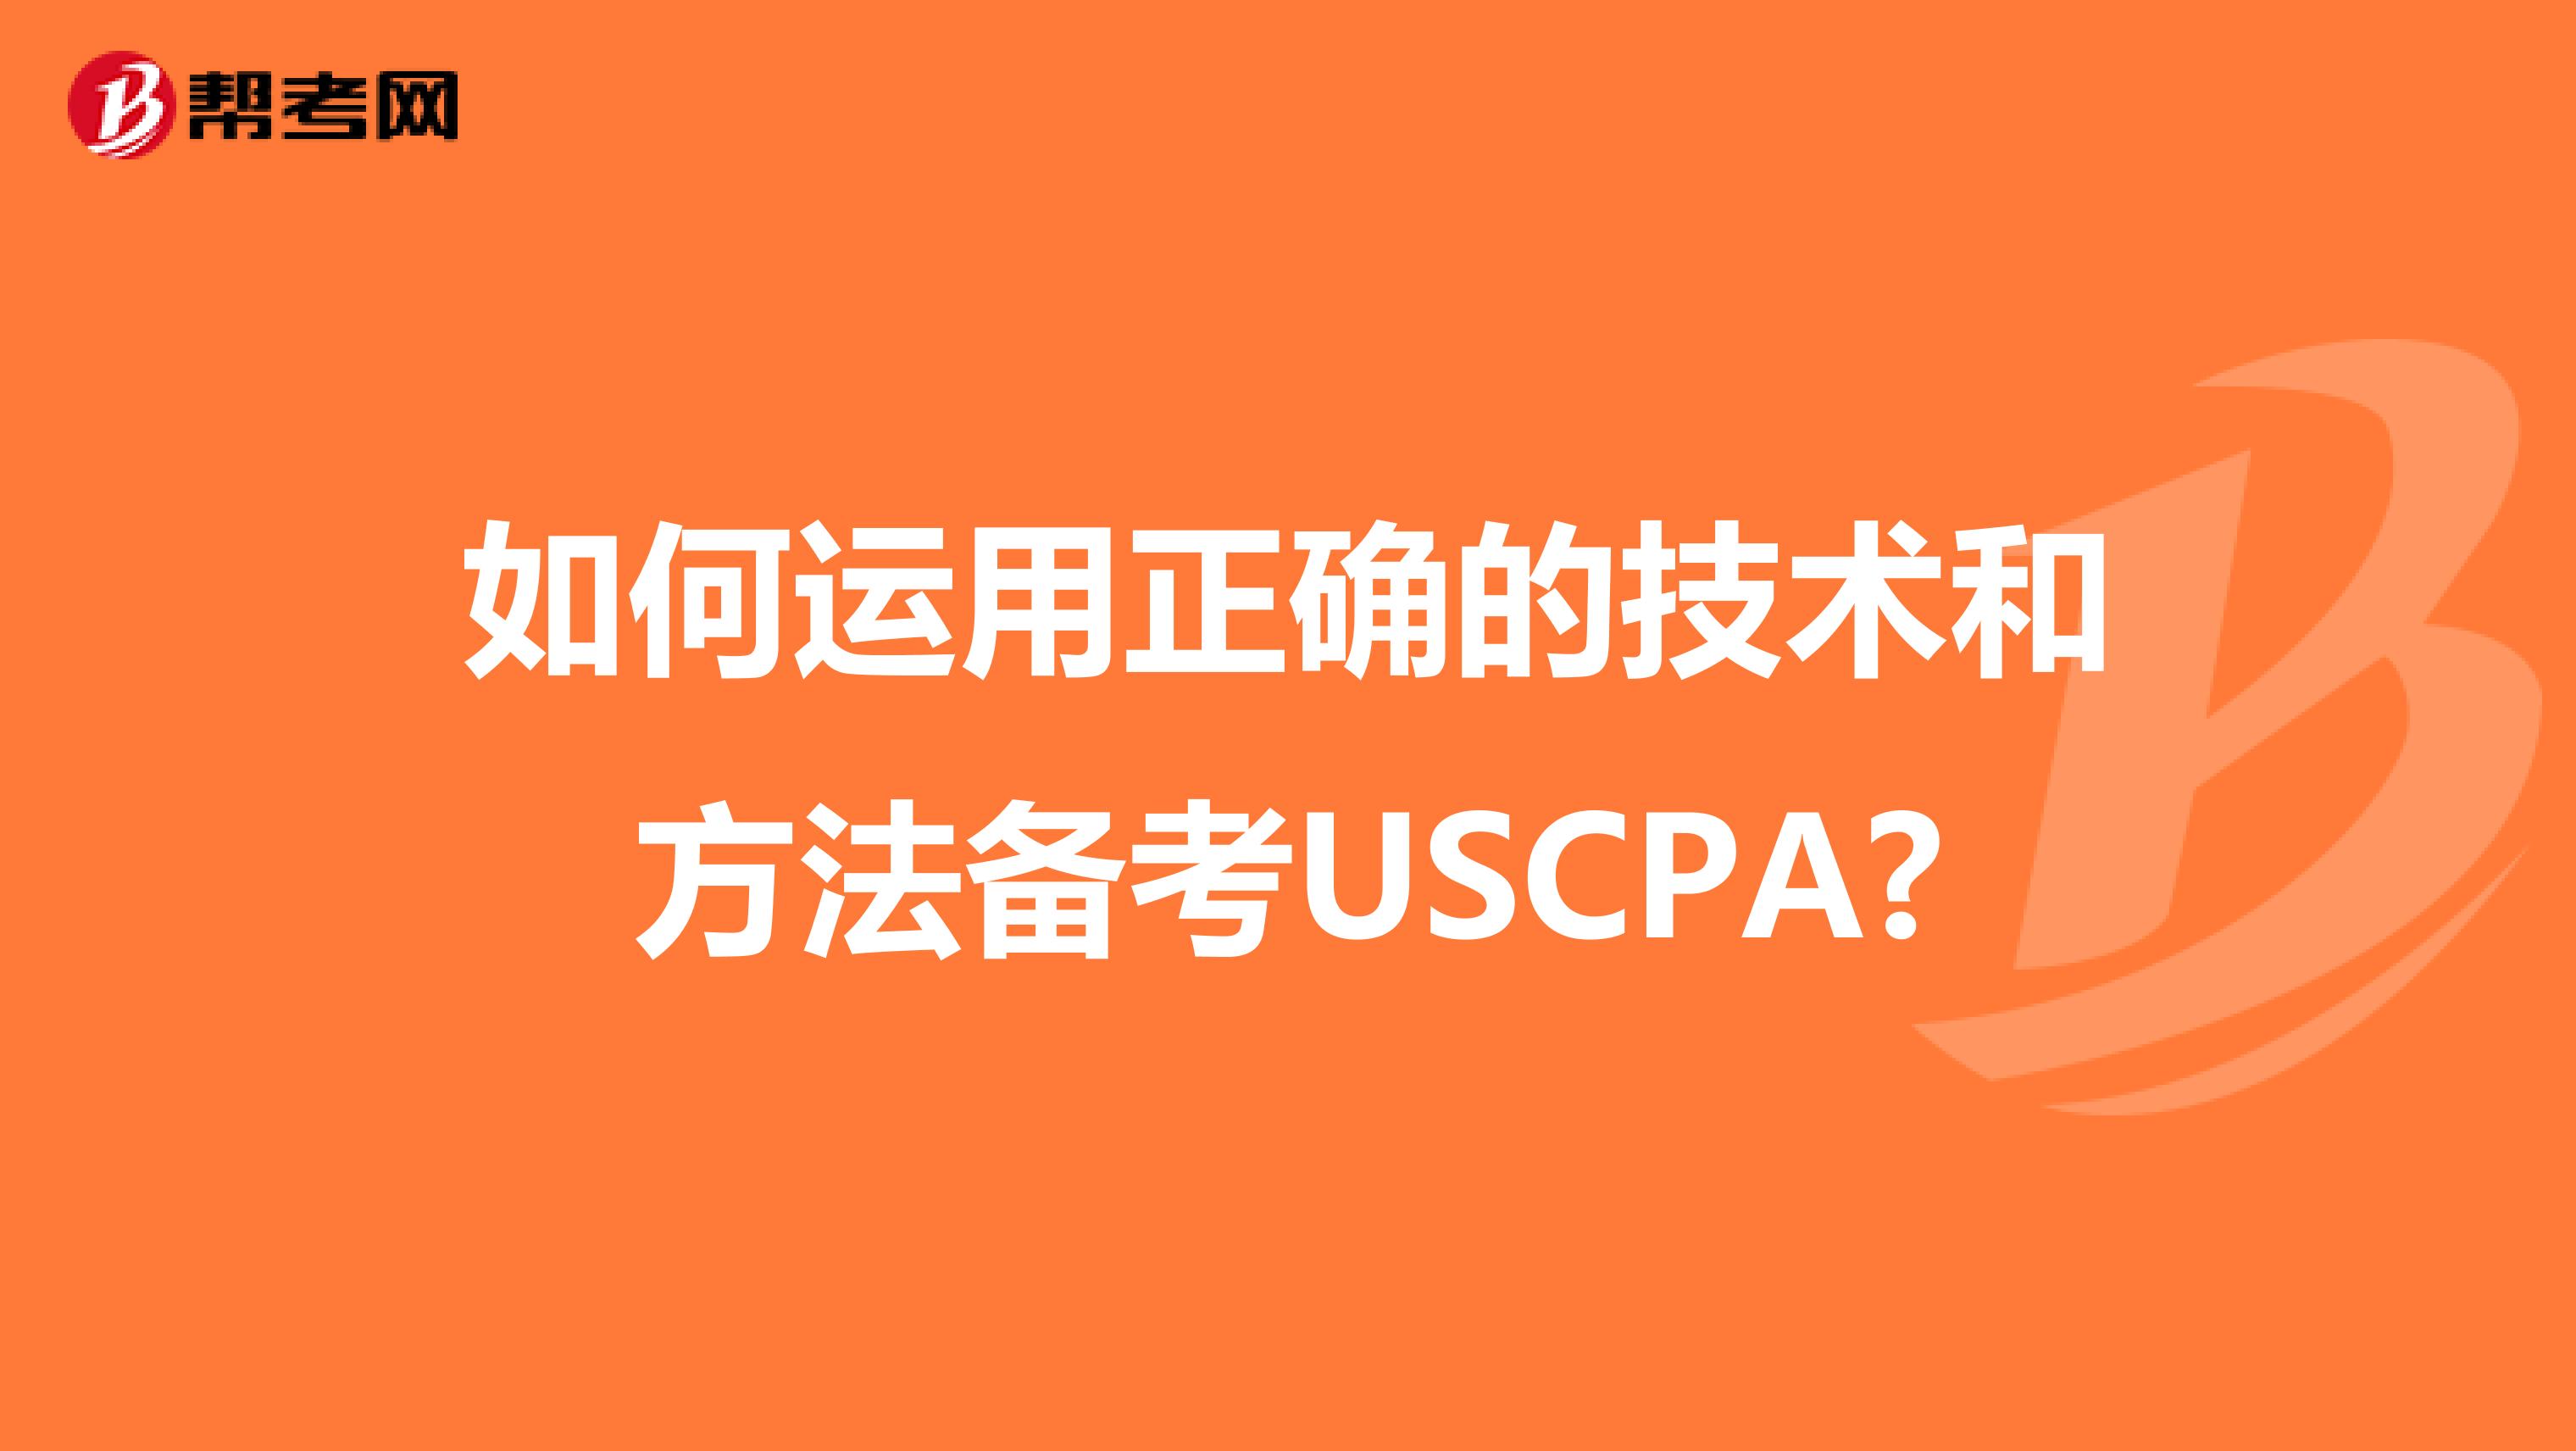 如何运用正确的技术和方法备考USCPA?